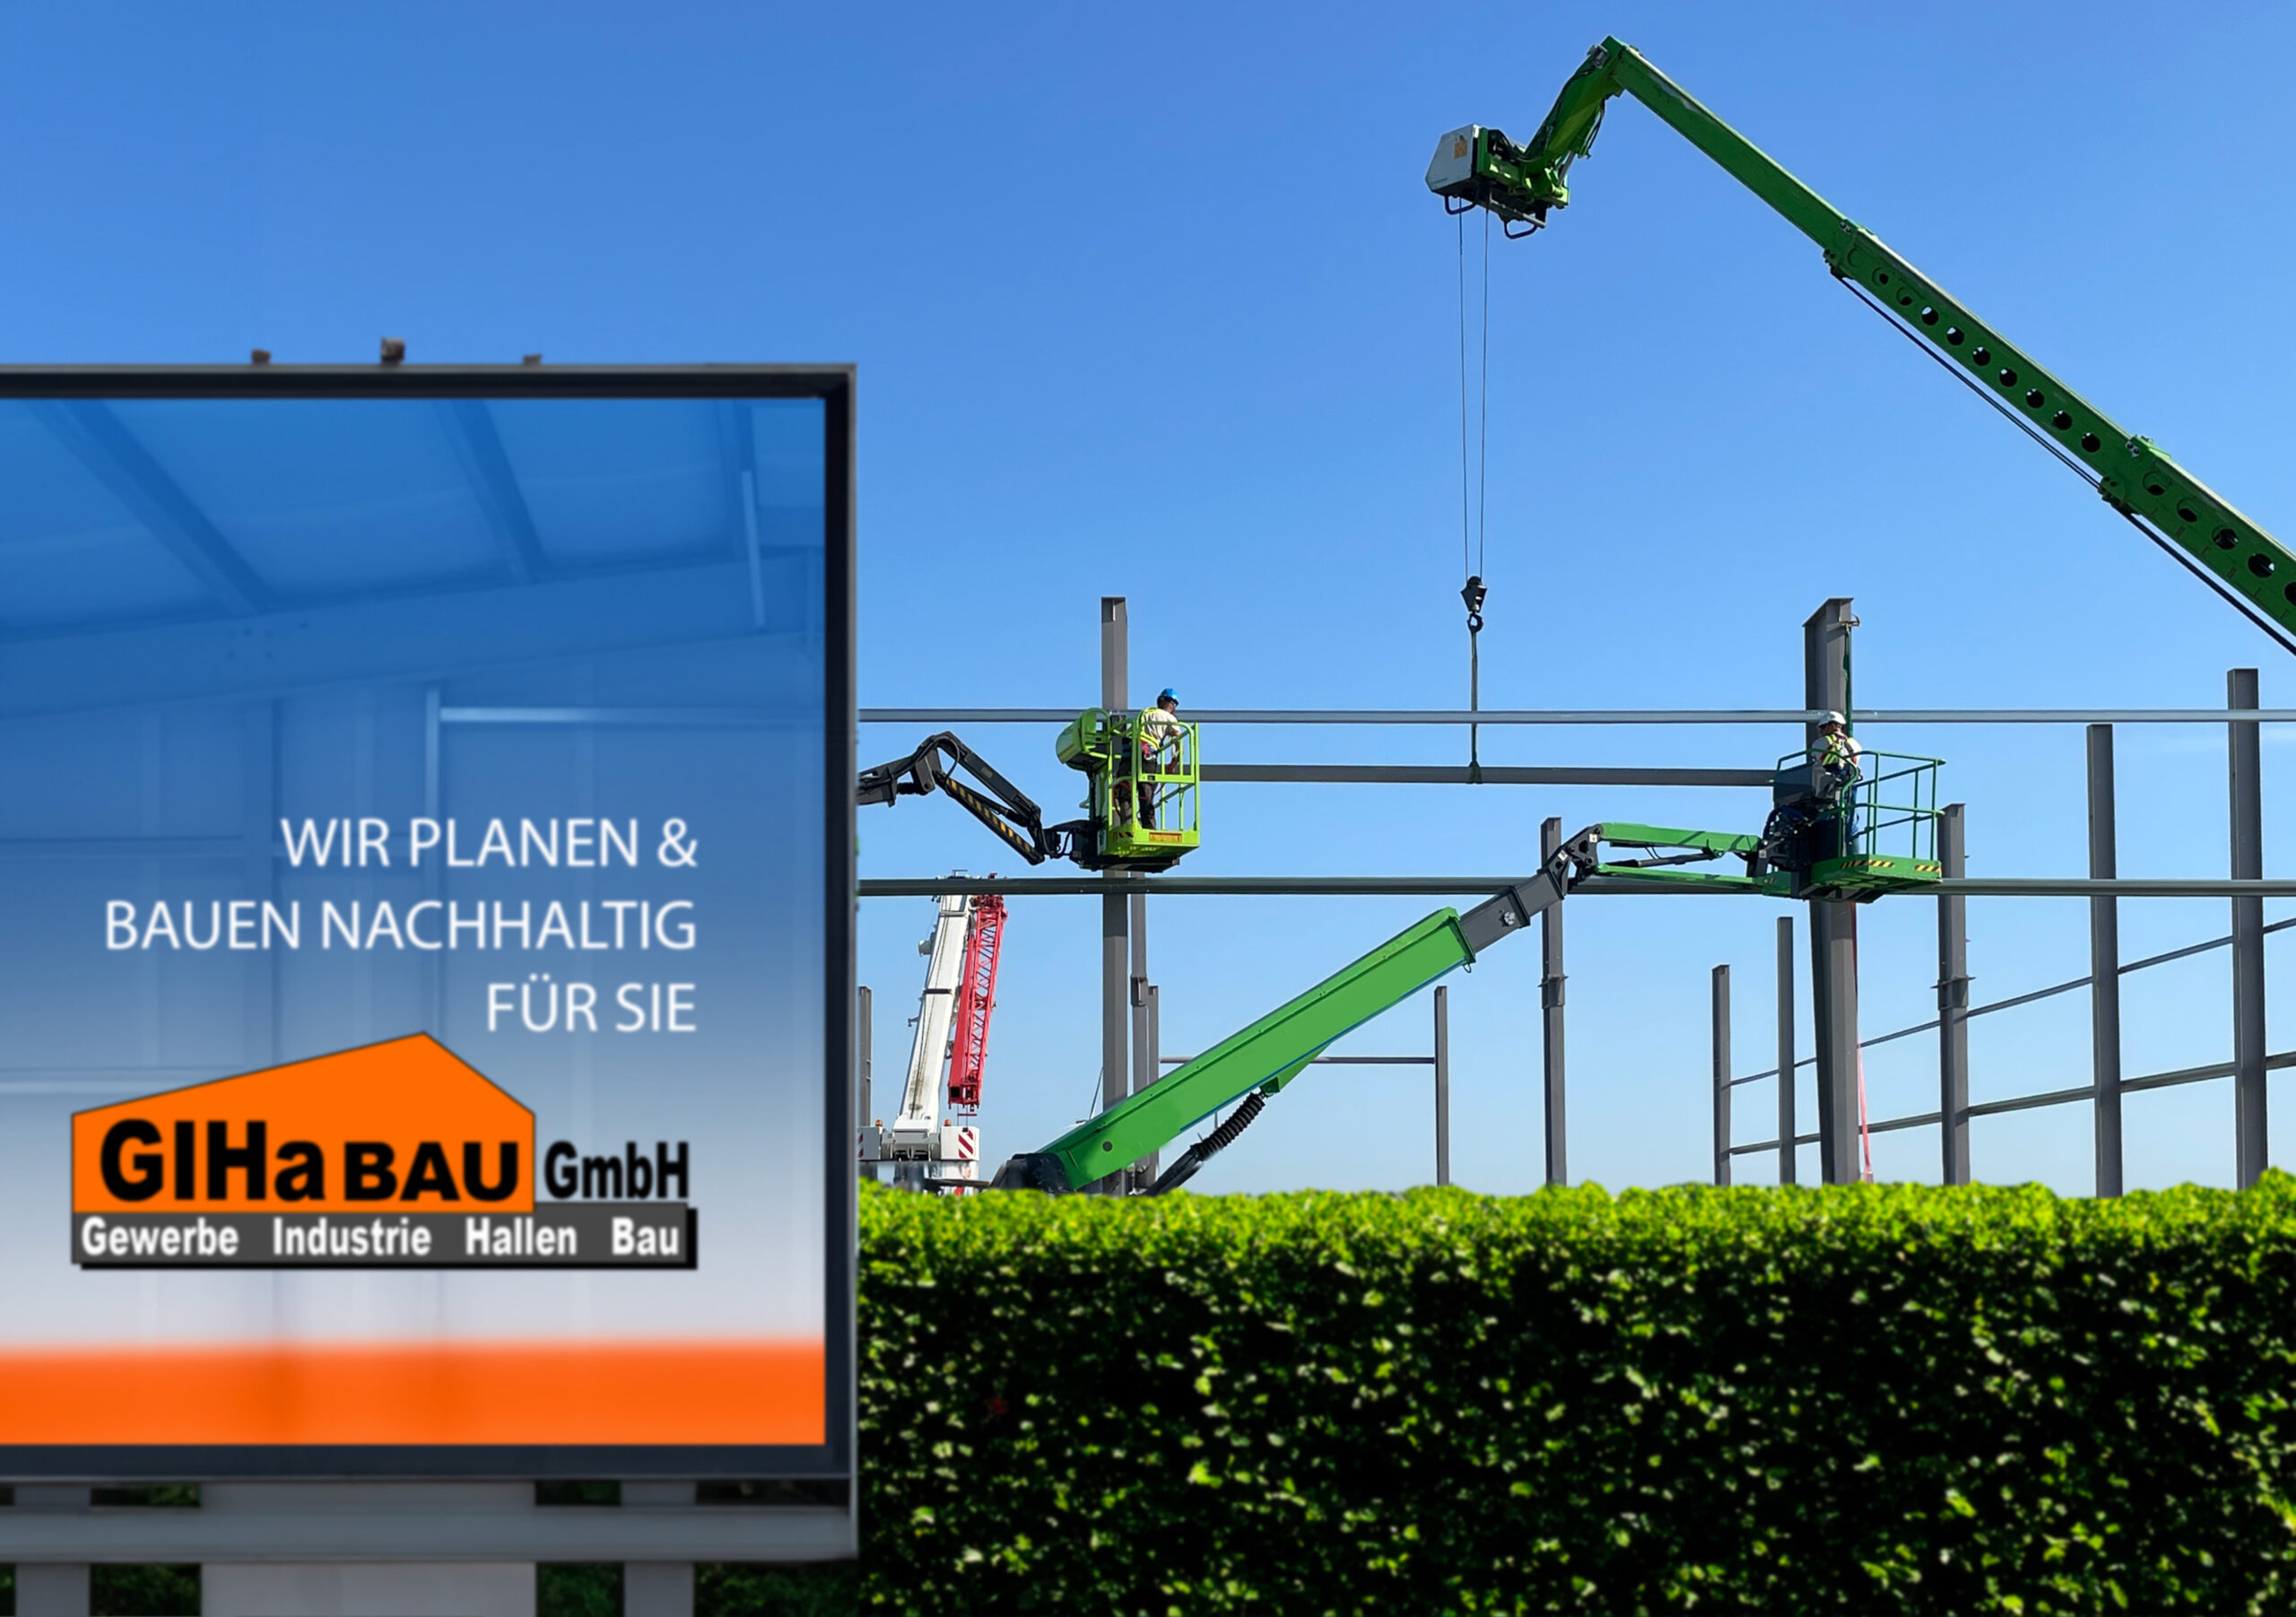 GIHa-BAU GmbH wirbt mit: "Wir planen und bauen nachhaltig für Sie!"